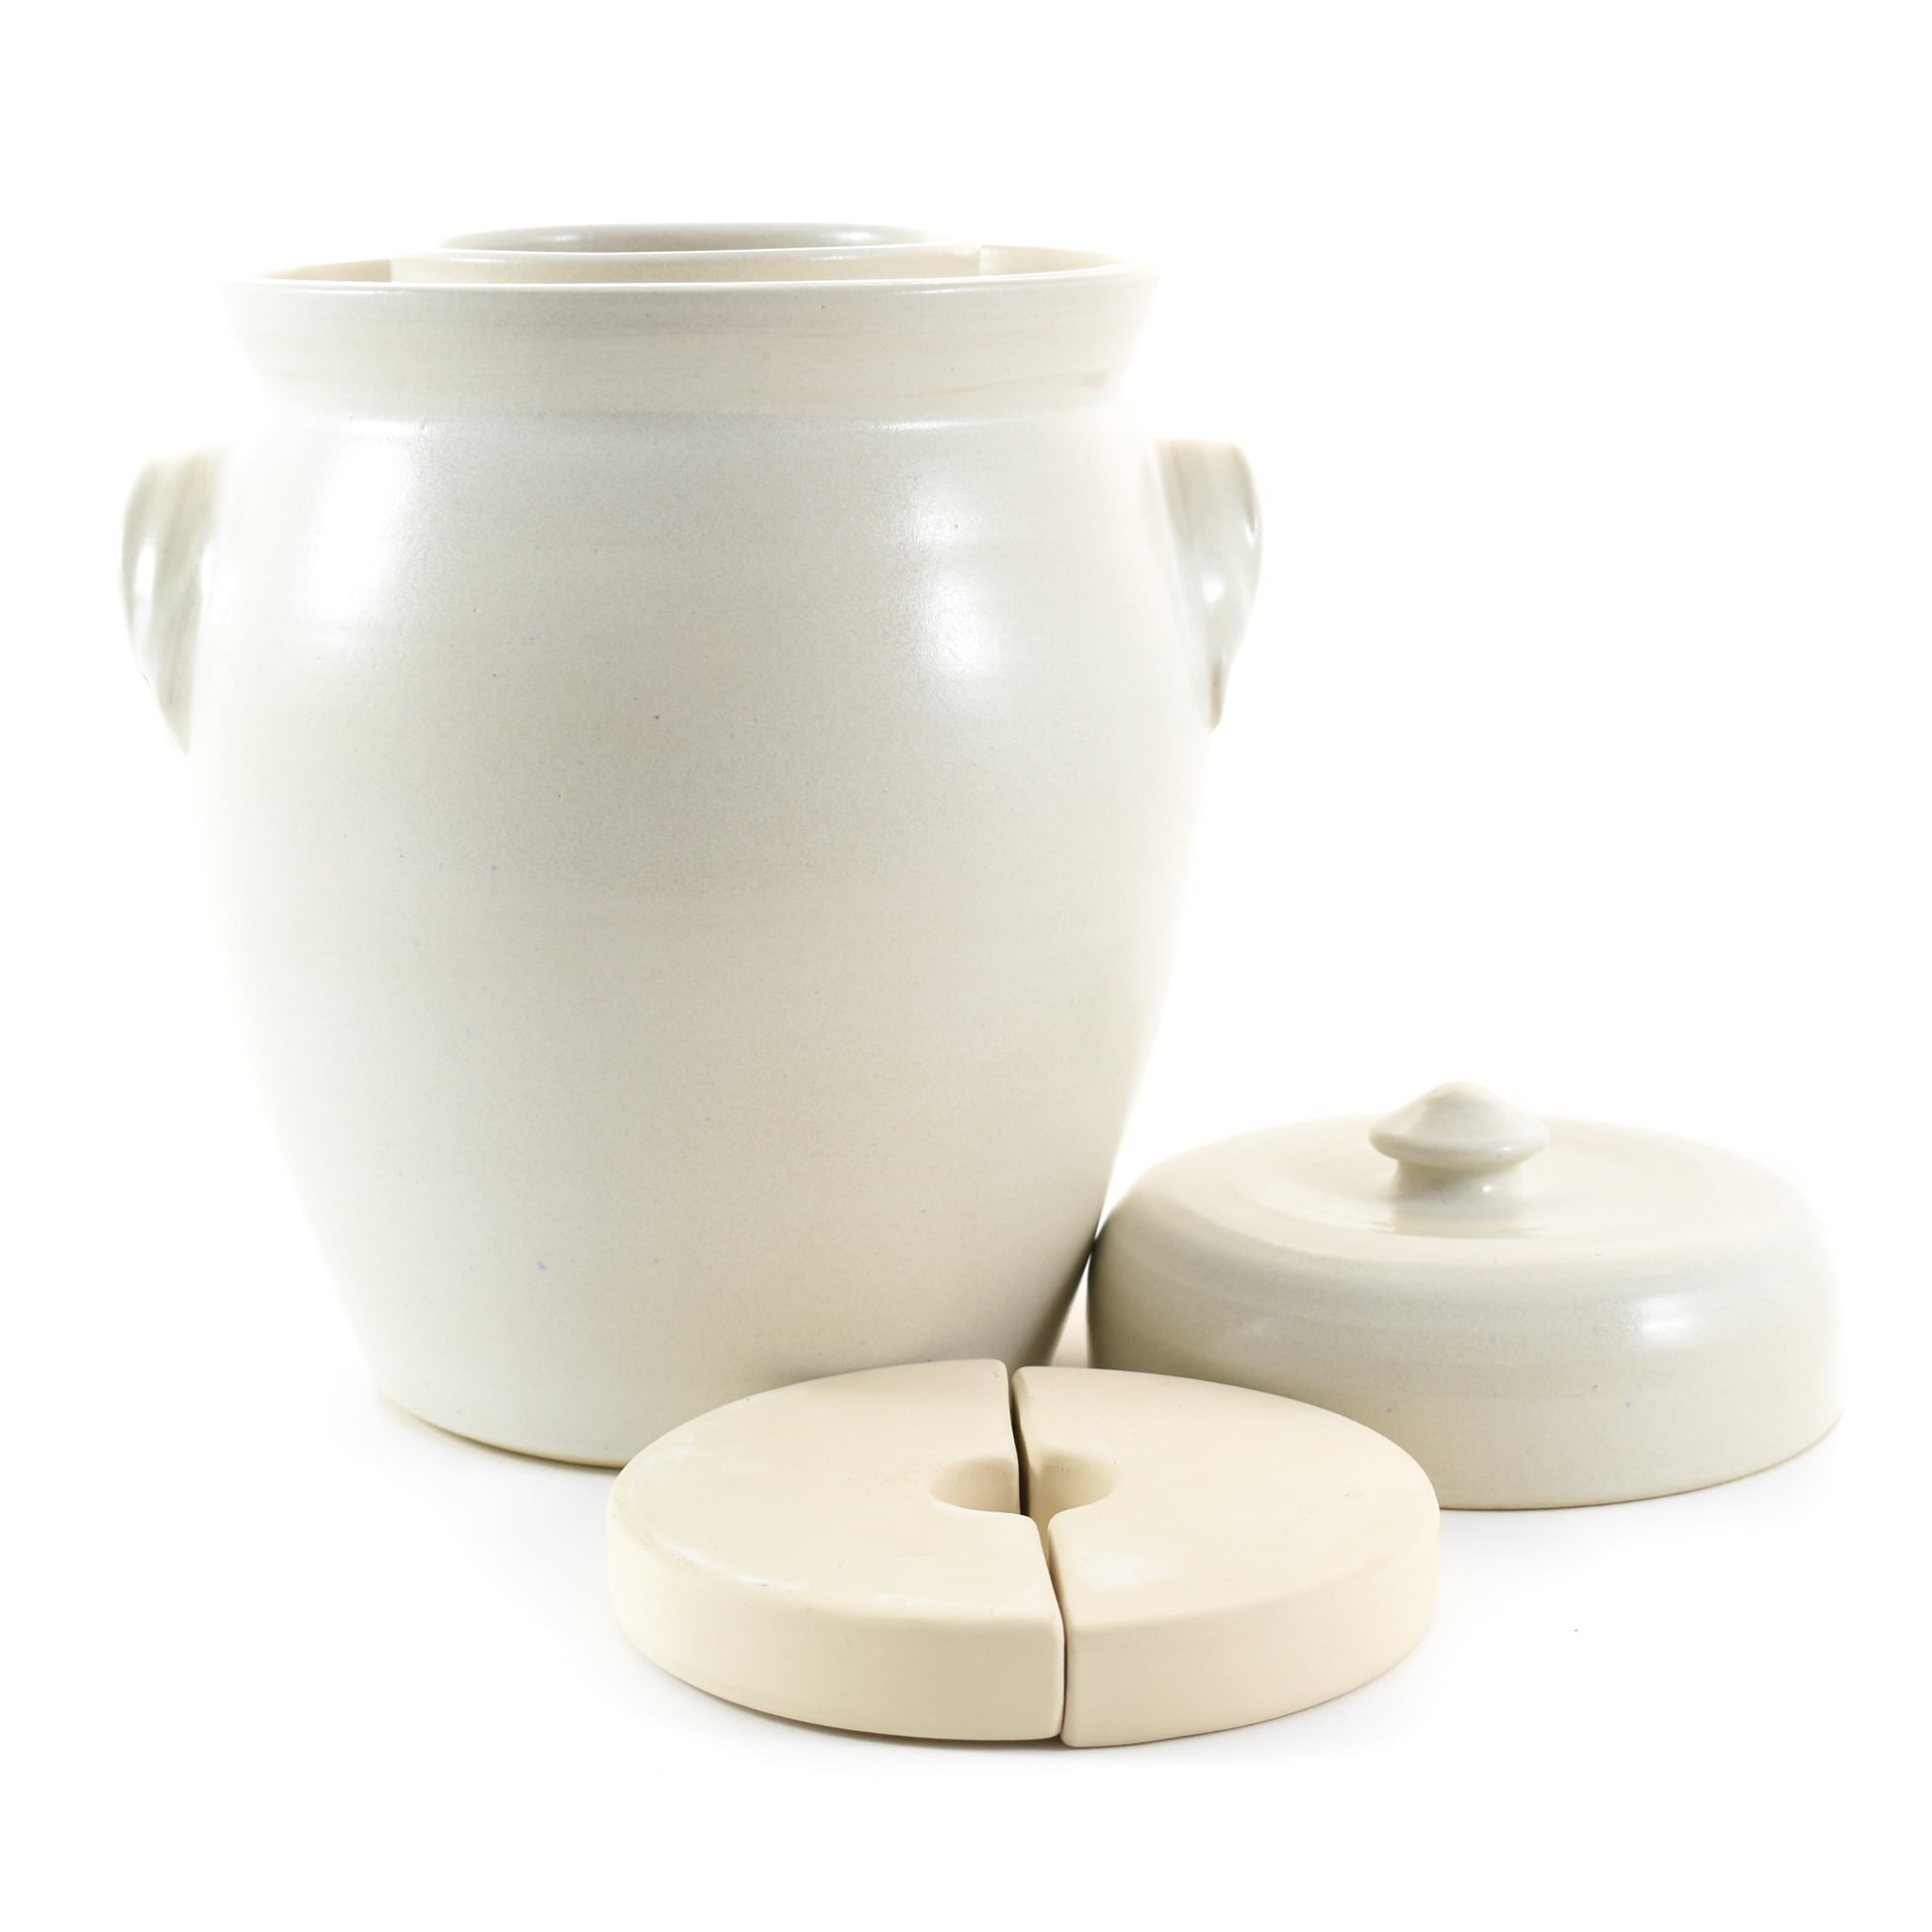 Handmade Stoneware Fermenting Crock in White 4.5 litre